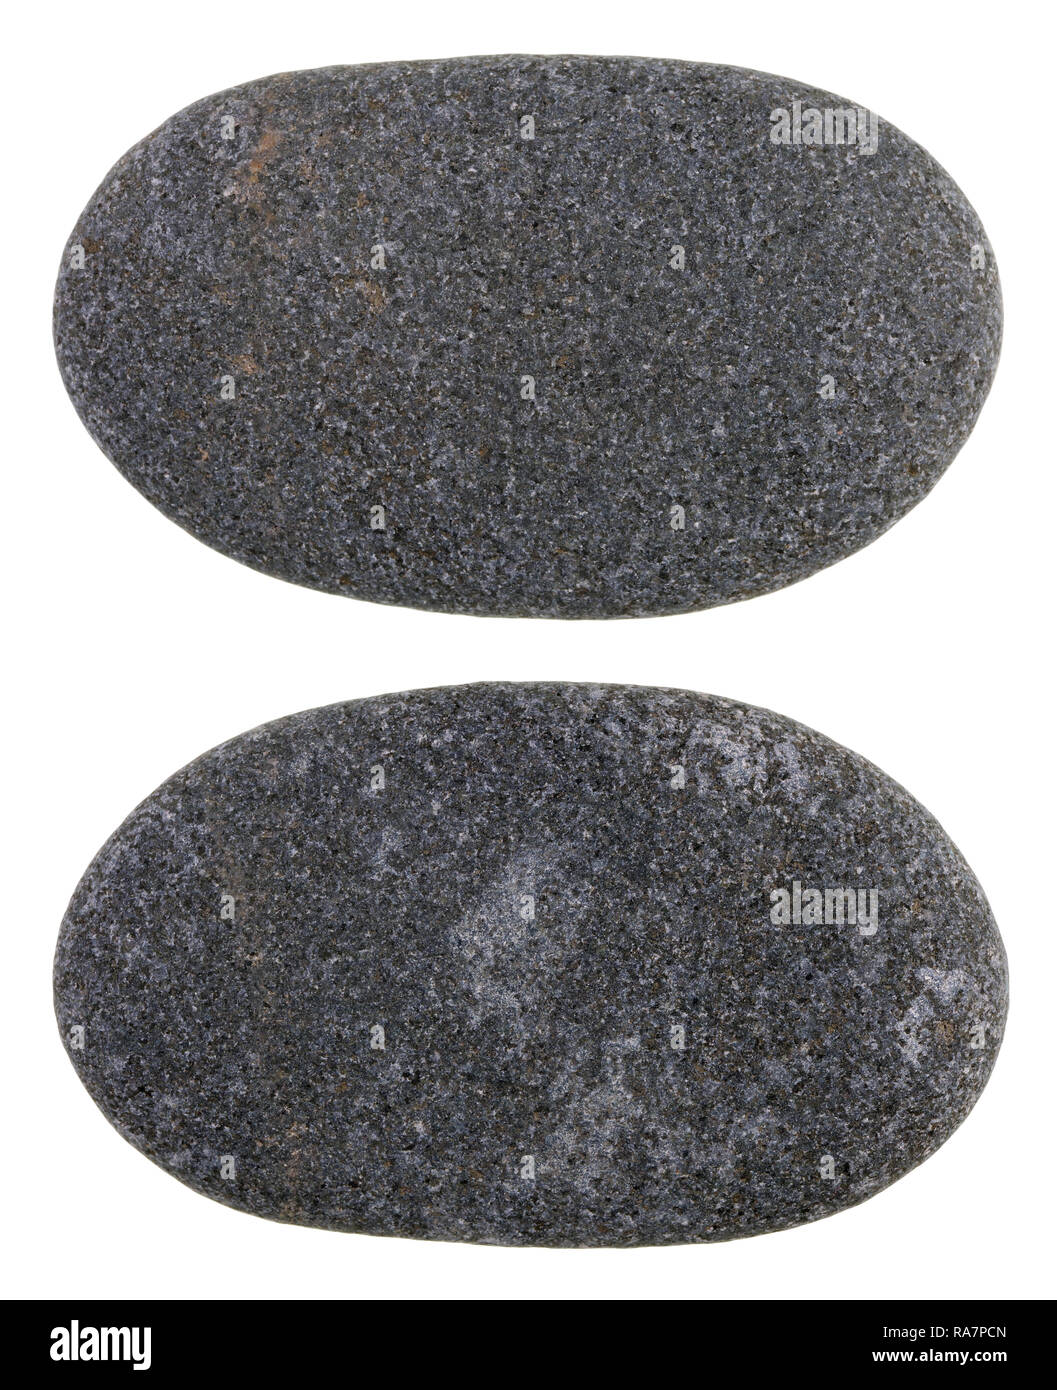 Une petite côte noire lisse pebble stone tourné par les vagues de la mer Baltique. Isolé sur un plan macro studio blanc Banque D'Images